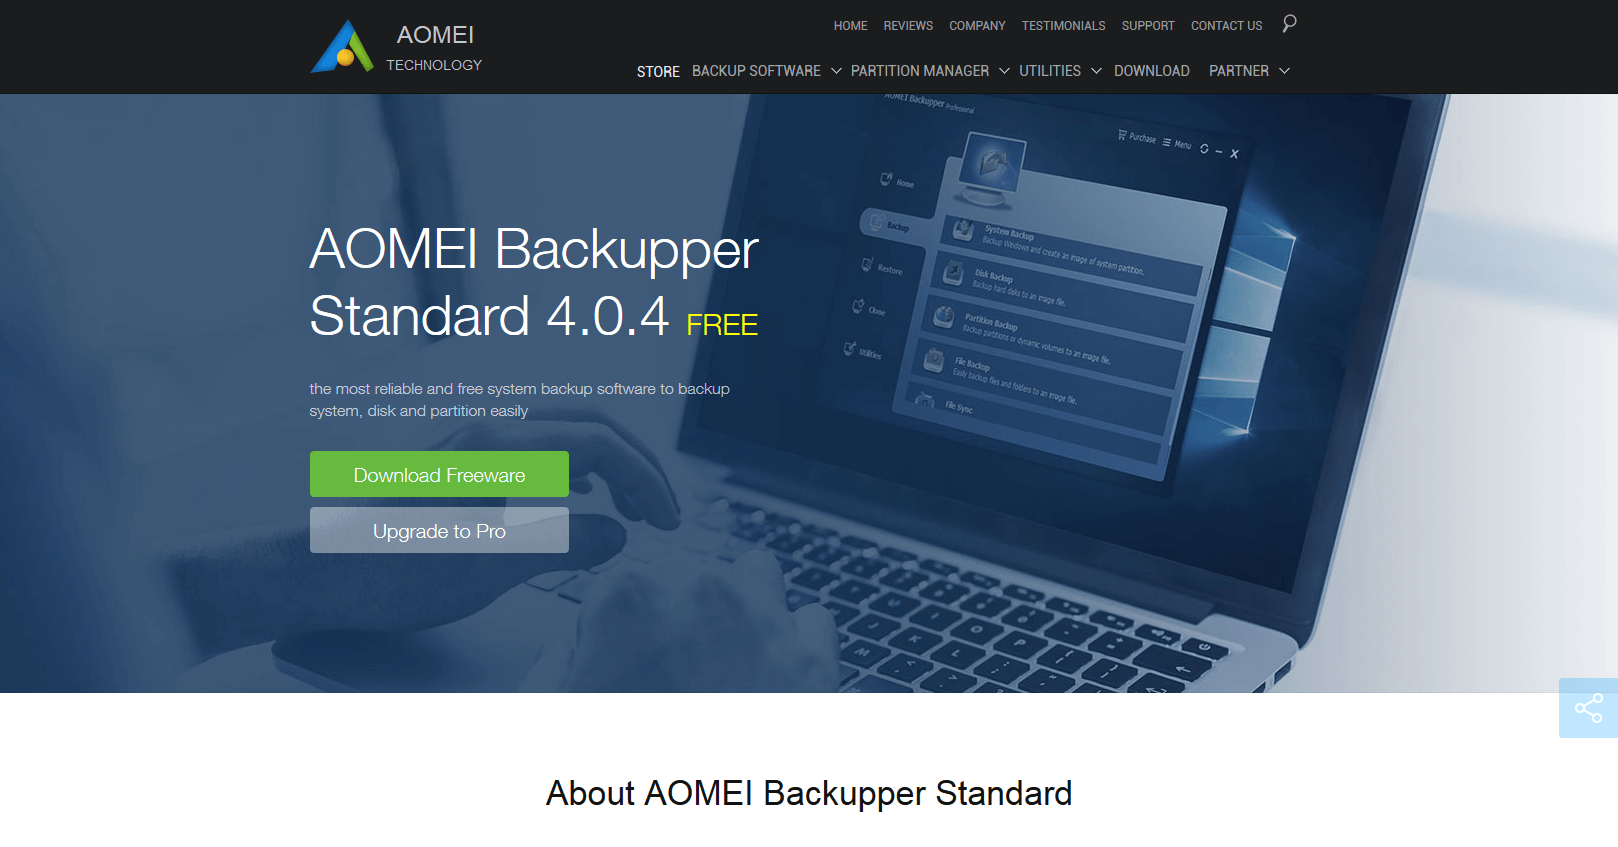 Product website: Aomei Backupper Standard 4.0.4